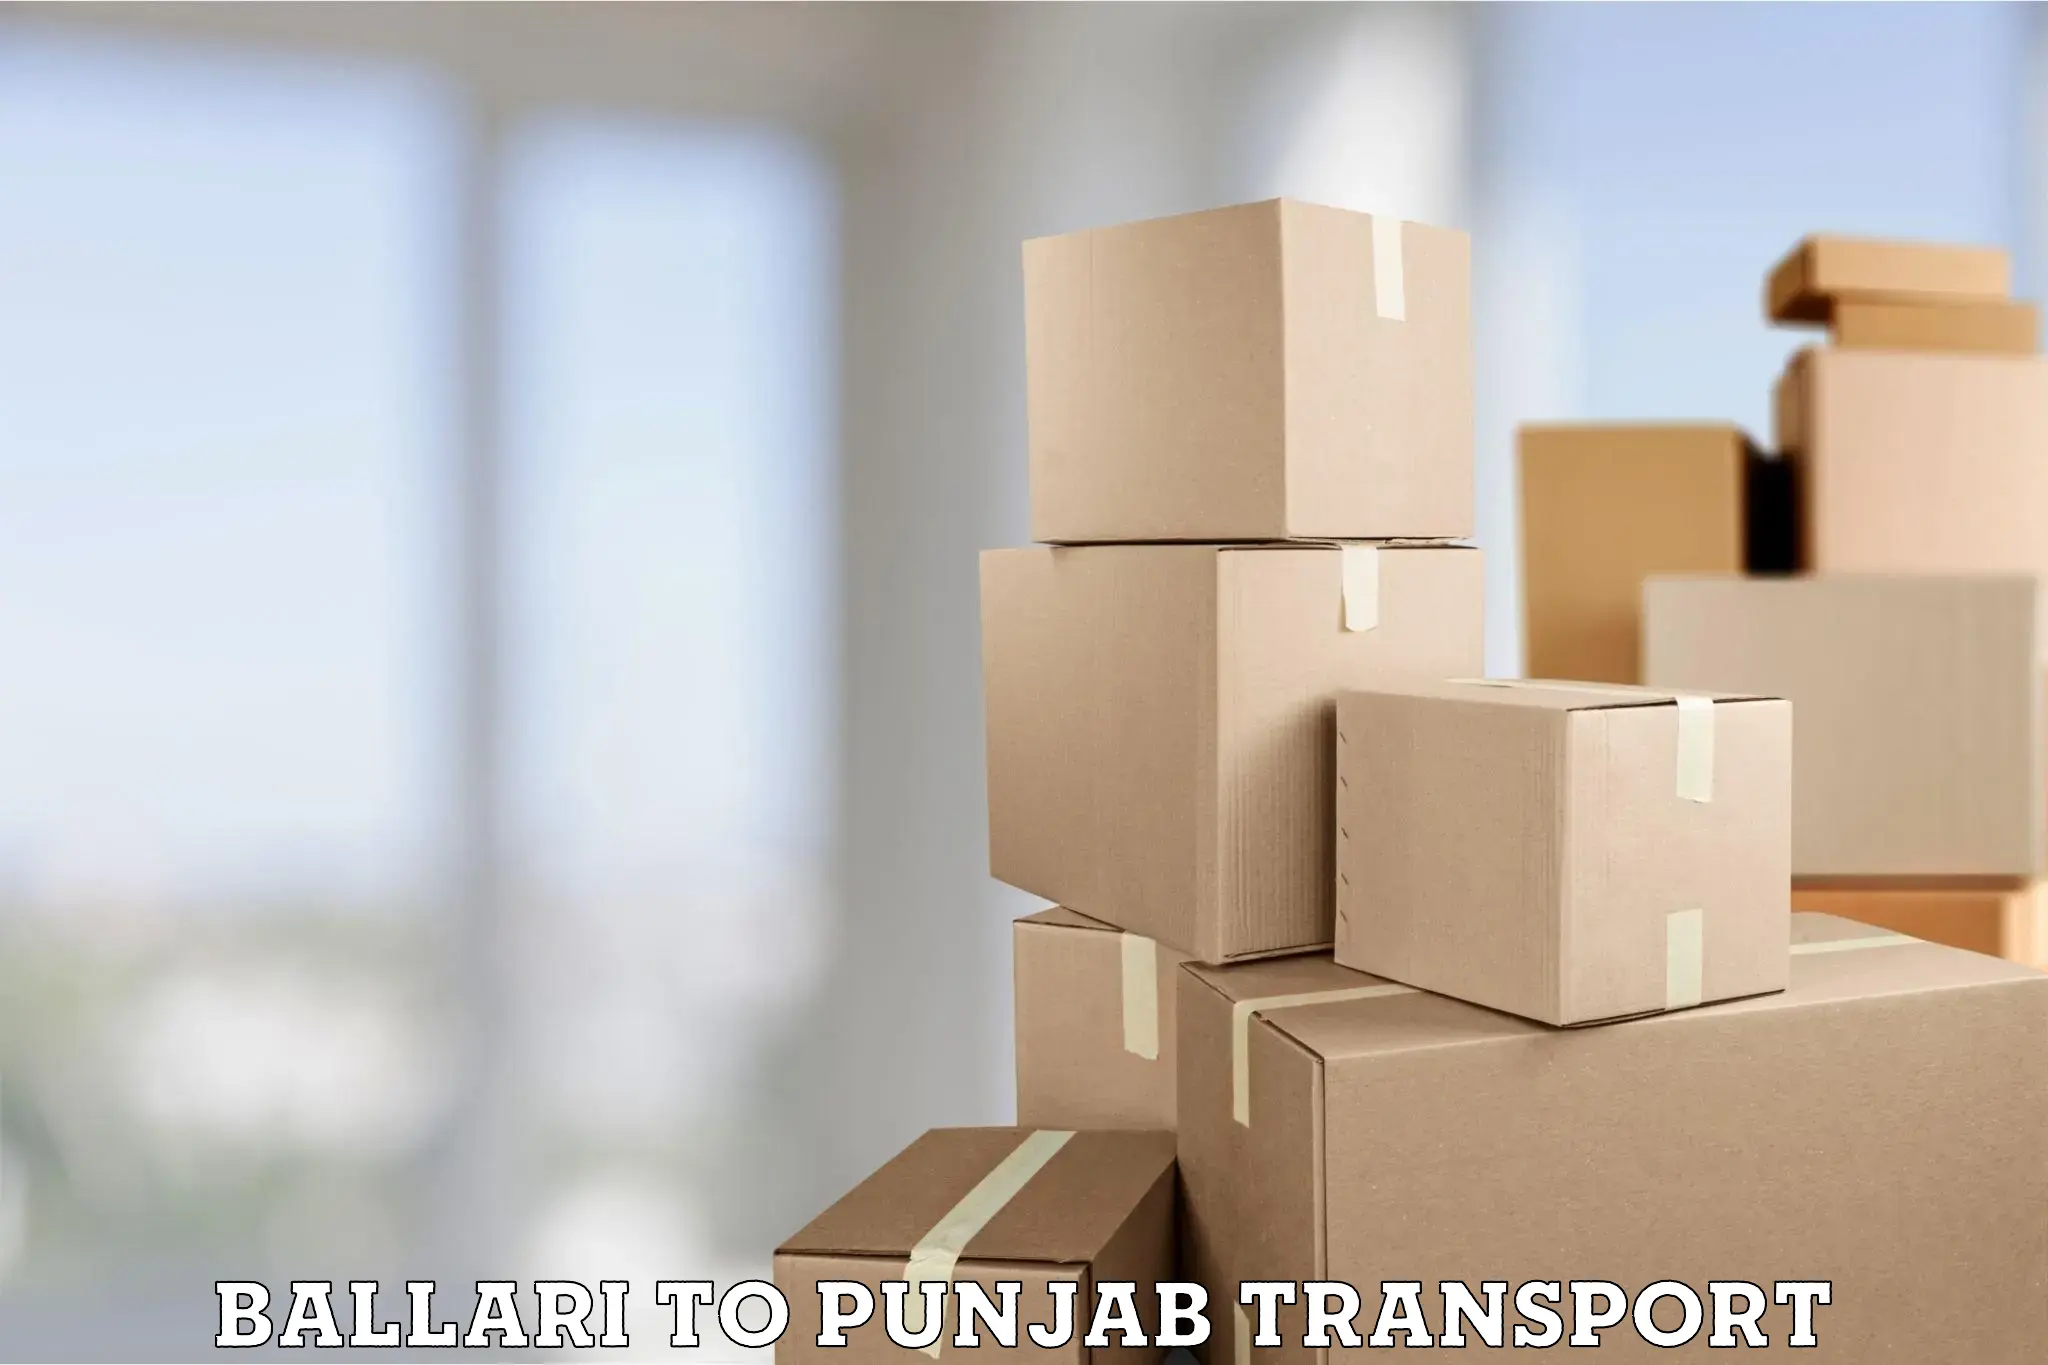 Nationwide transport services Ballari to Punjab